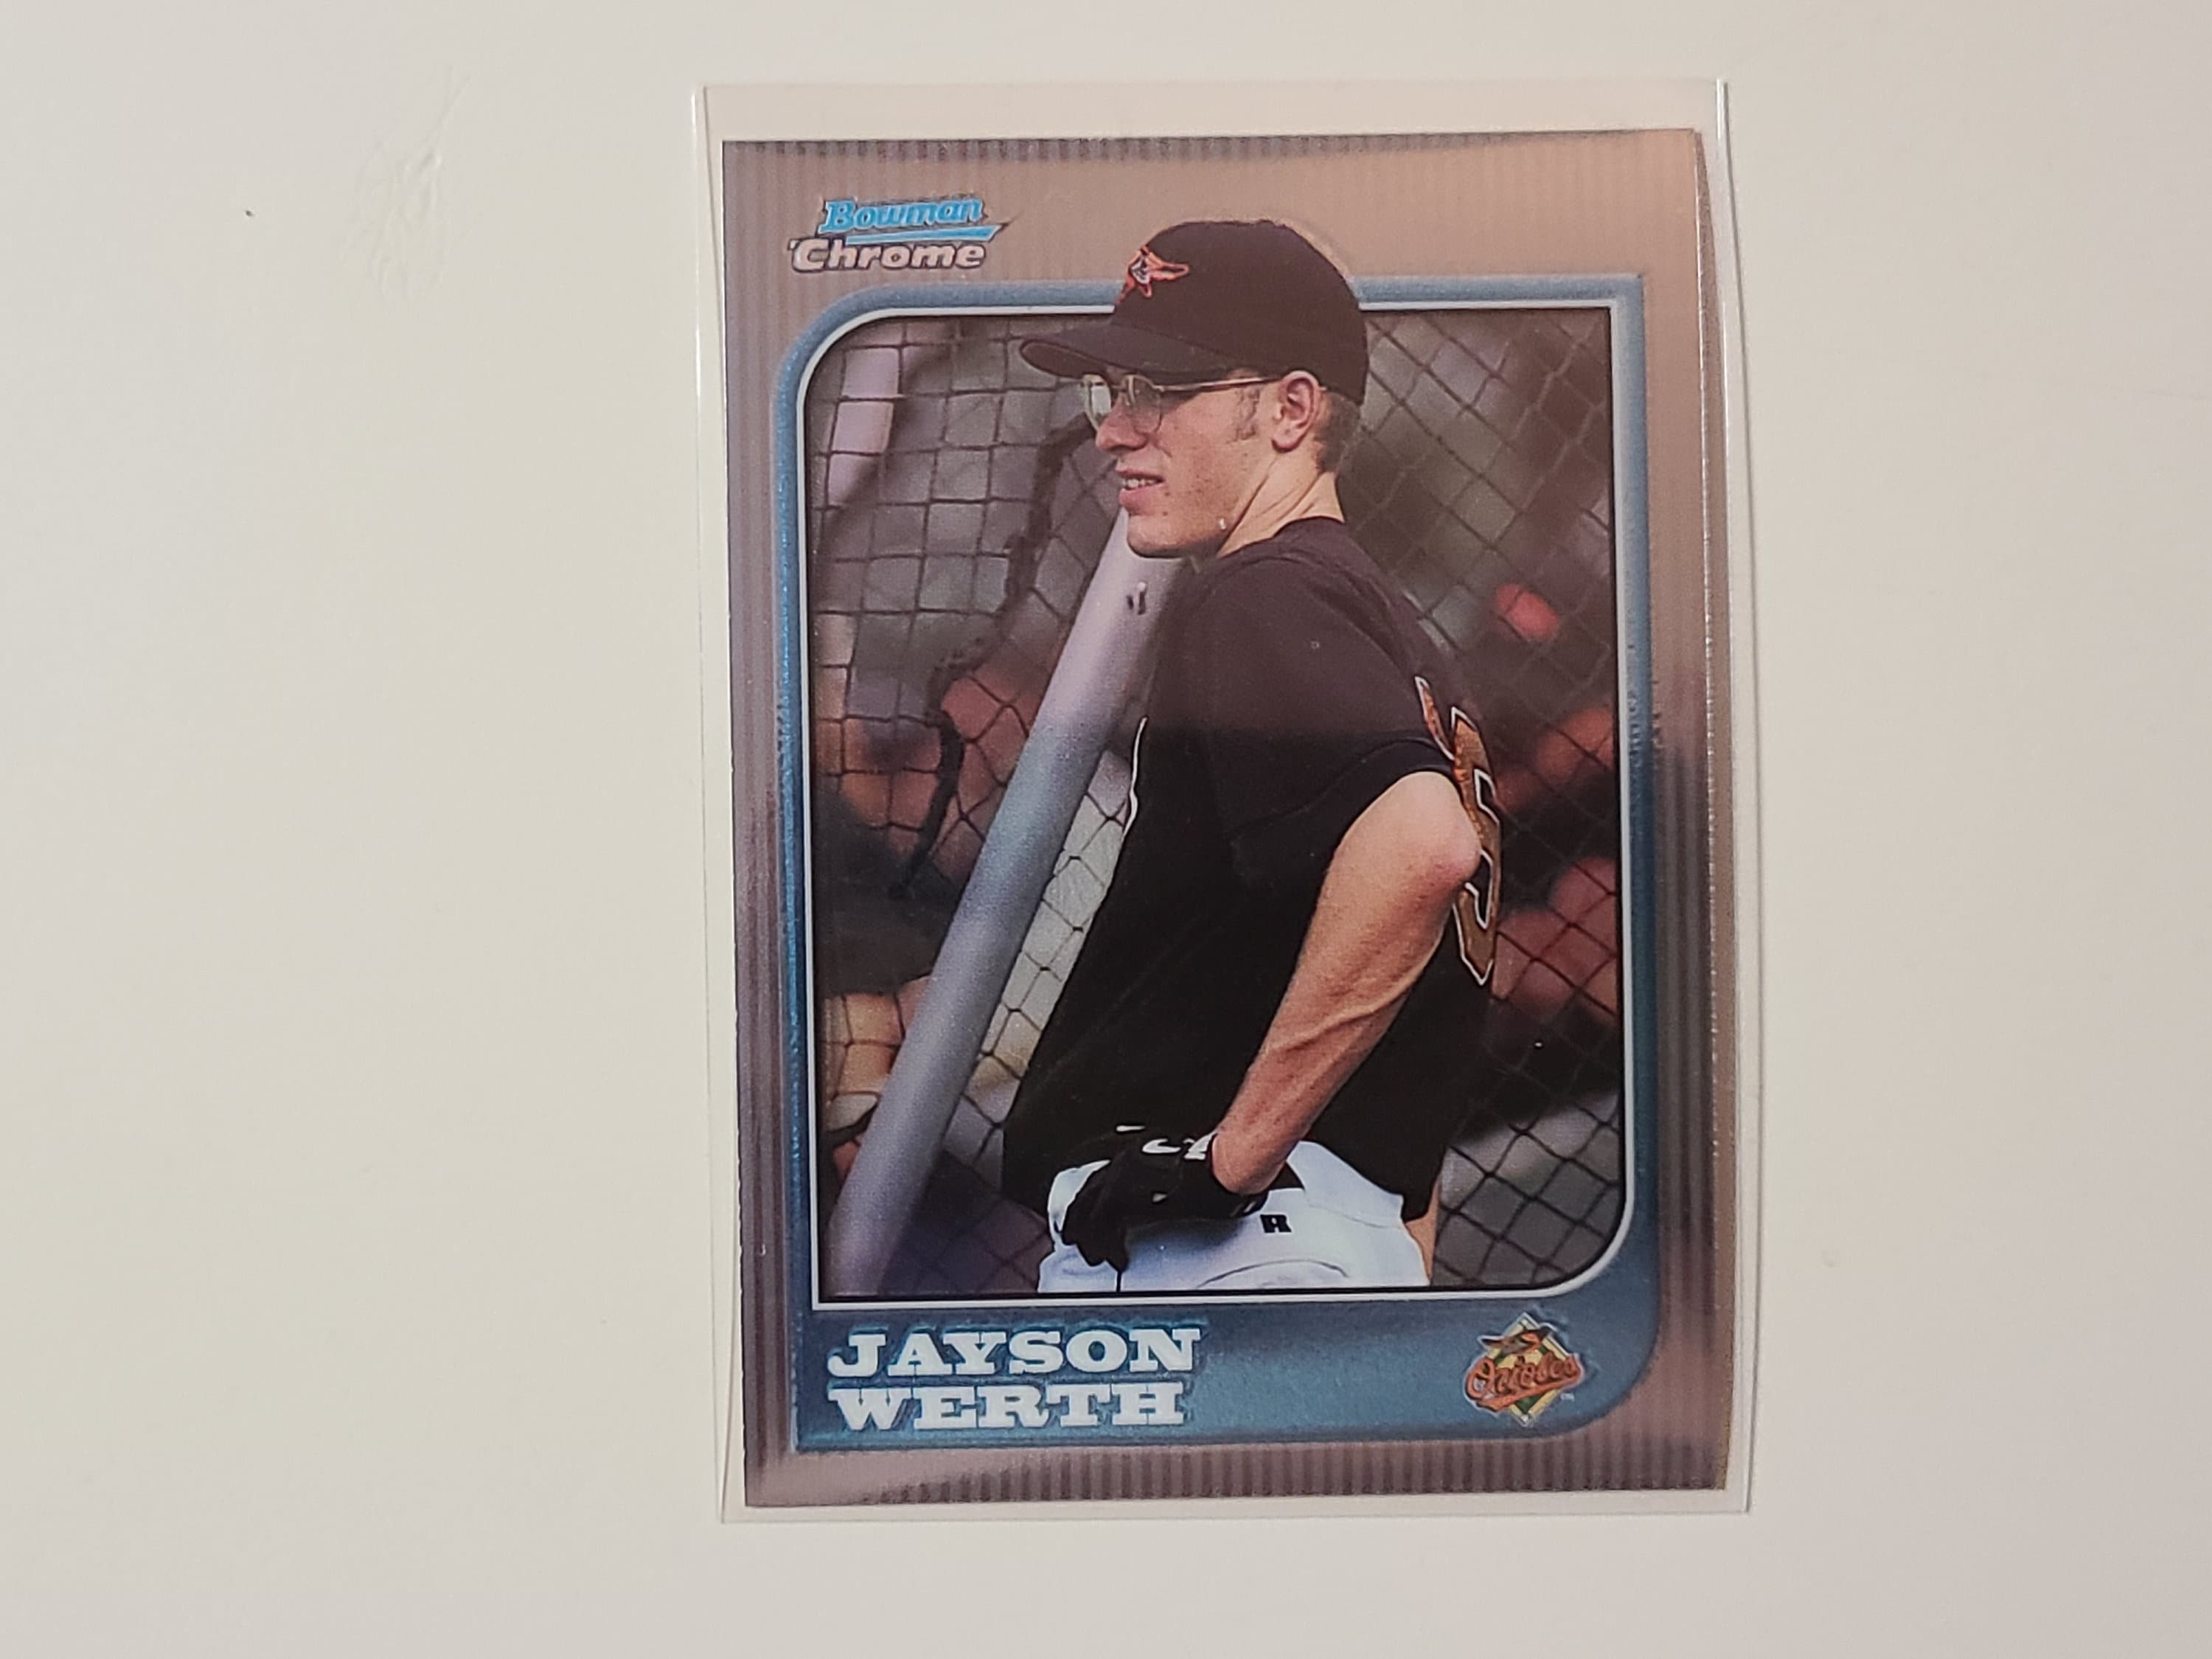 1997 Bowman Chrome Jayson Werth RC Rookie Baseball Card